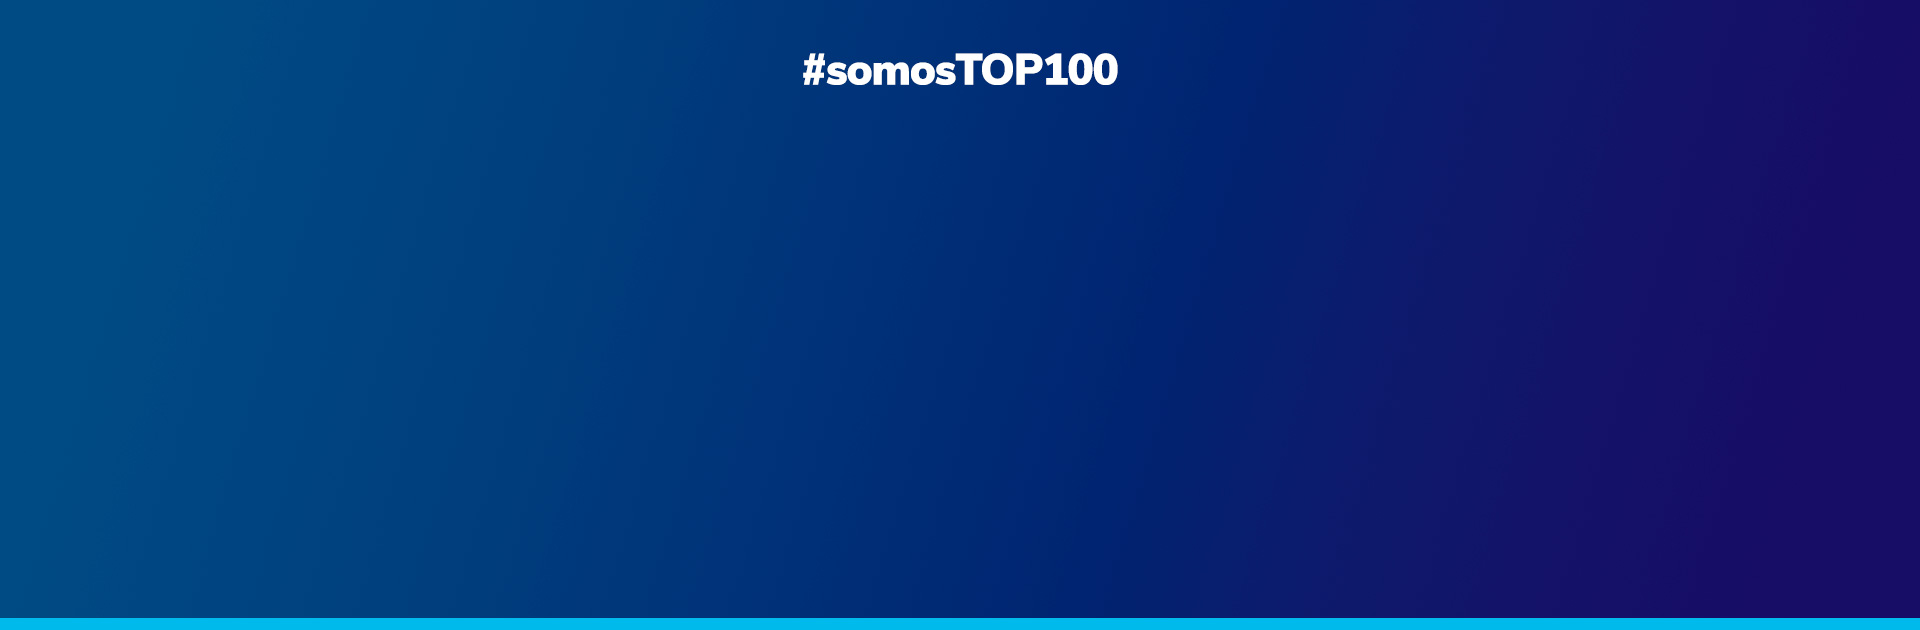 Softplan é reconhecida no “TOP 100 Open Corps” como uma das empresas que mais fazem open innovation com startups no Brasil